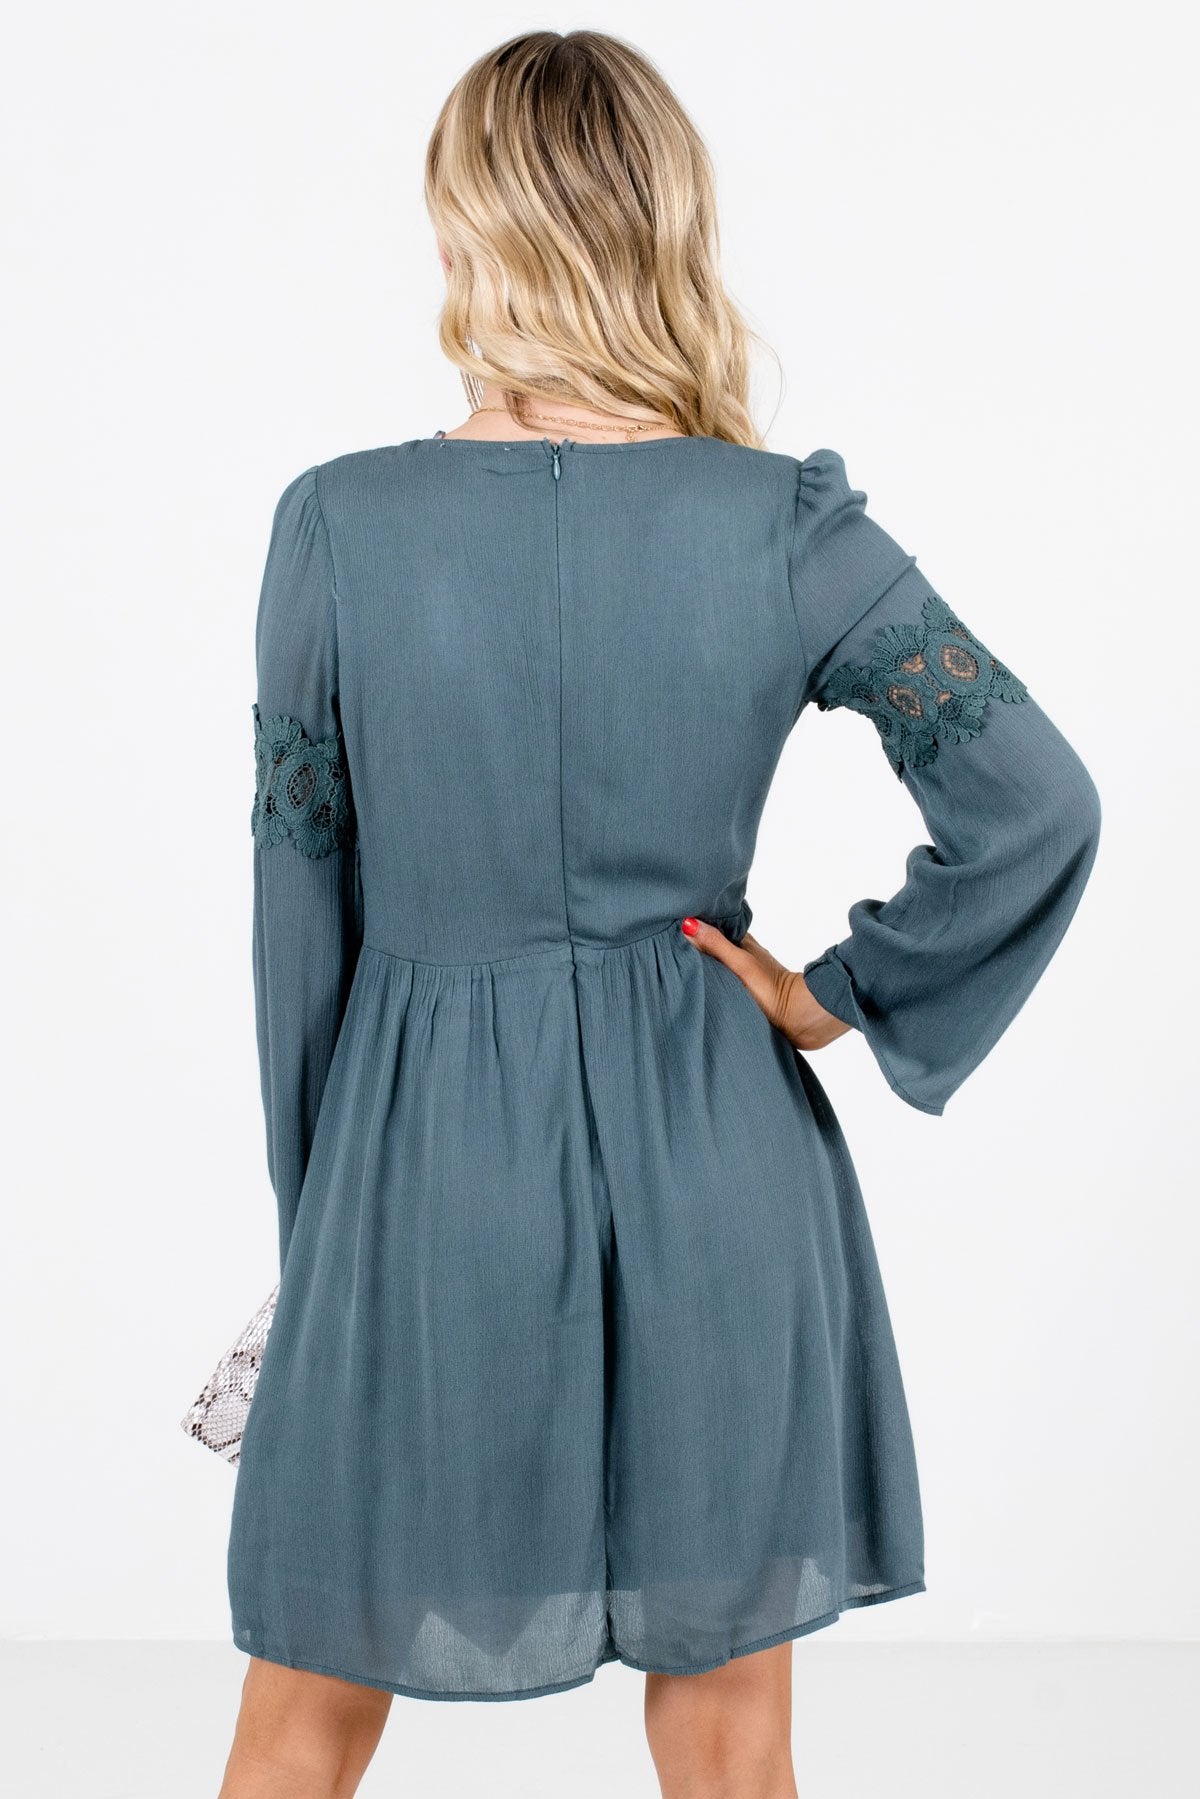 Women’s Blue Crochet Accented Boutique Mini Dress